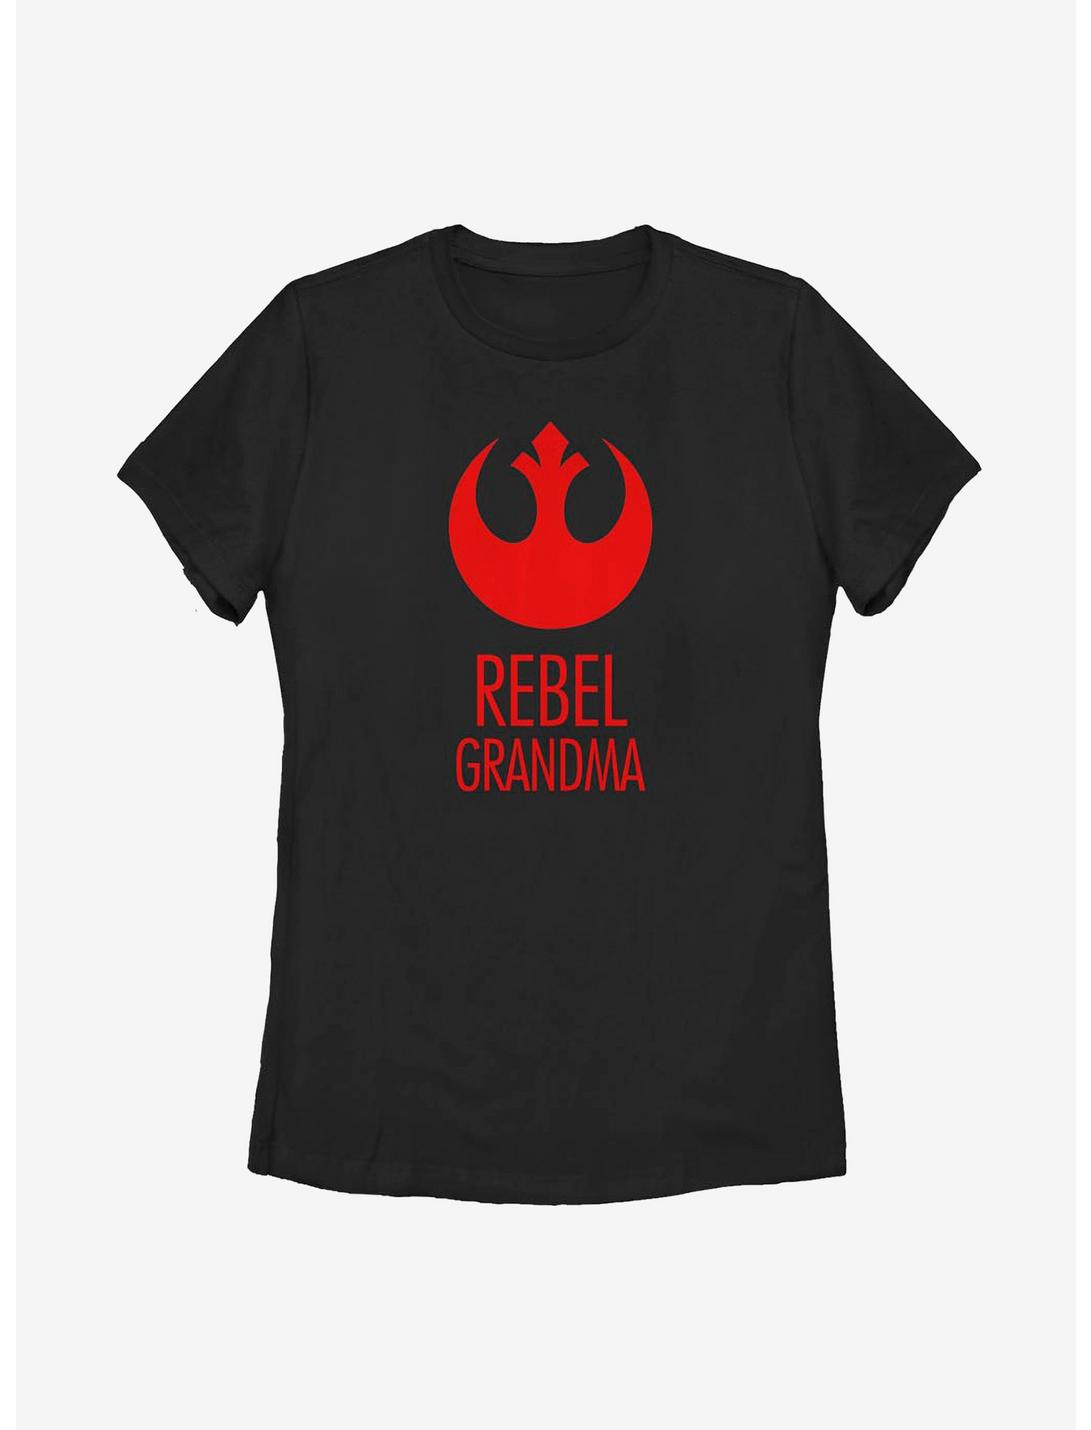 Star Wars Rebel Grandma Womens T-Shirt, BLACK, hi-res